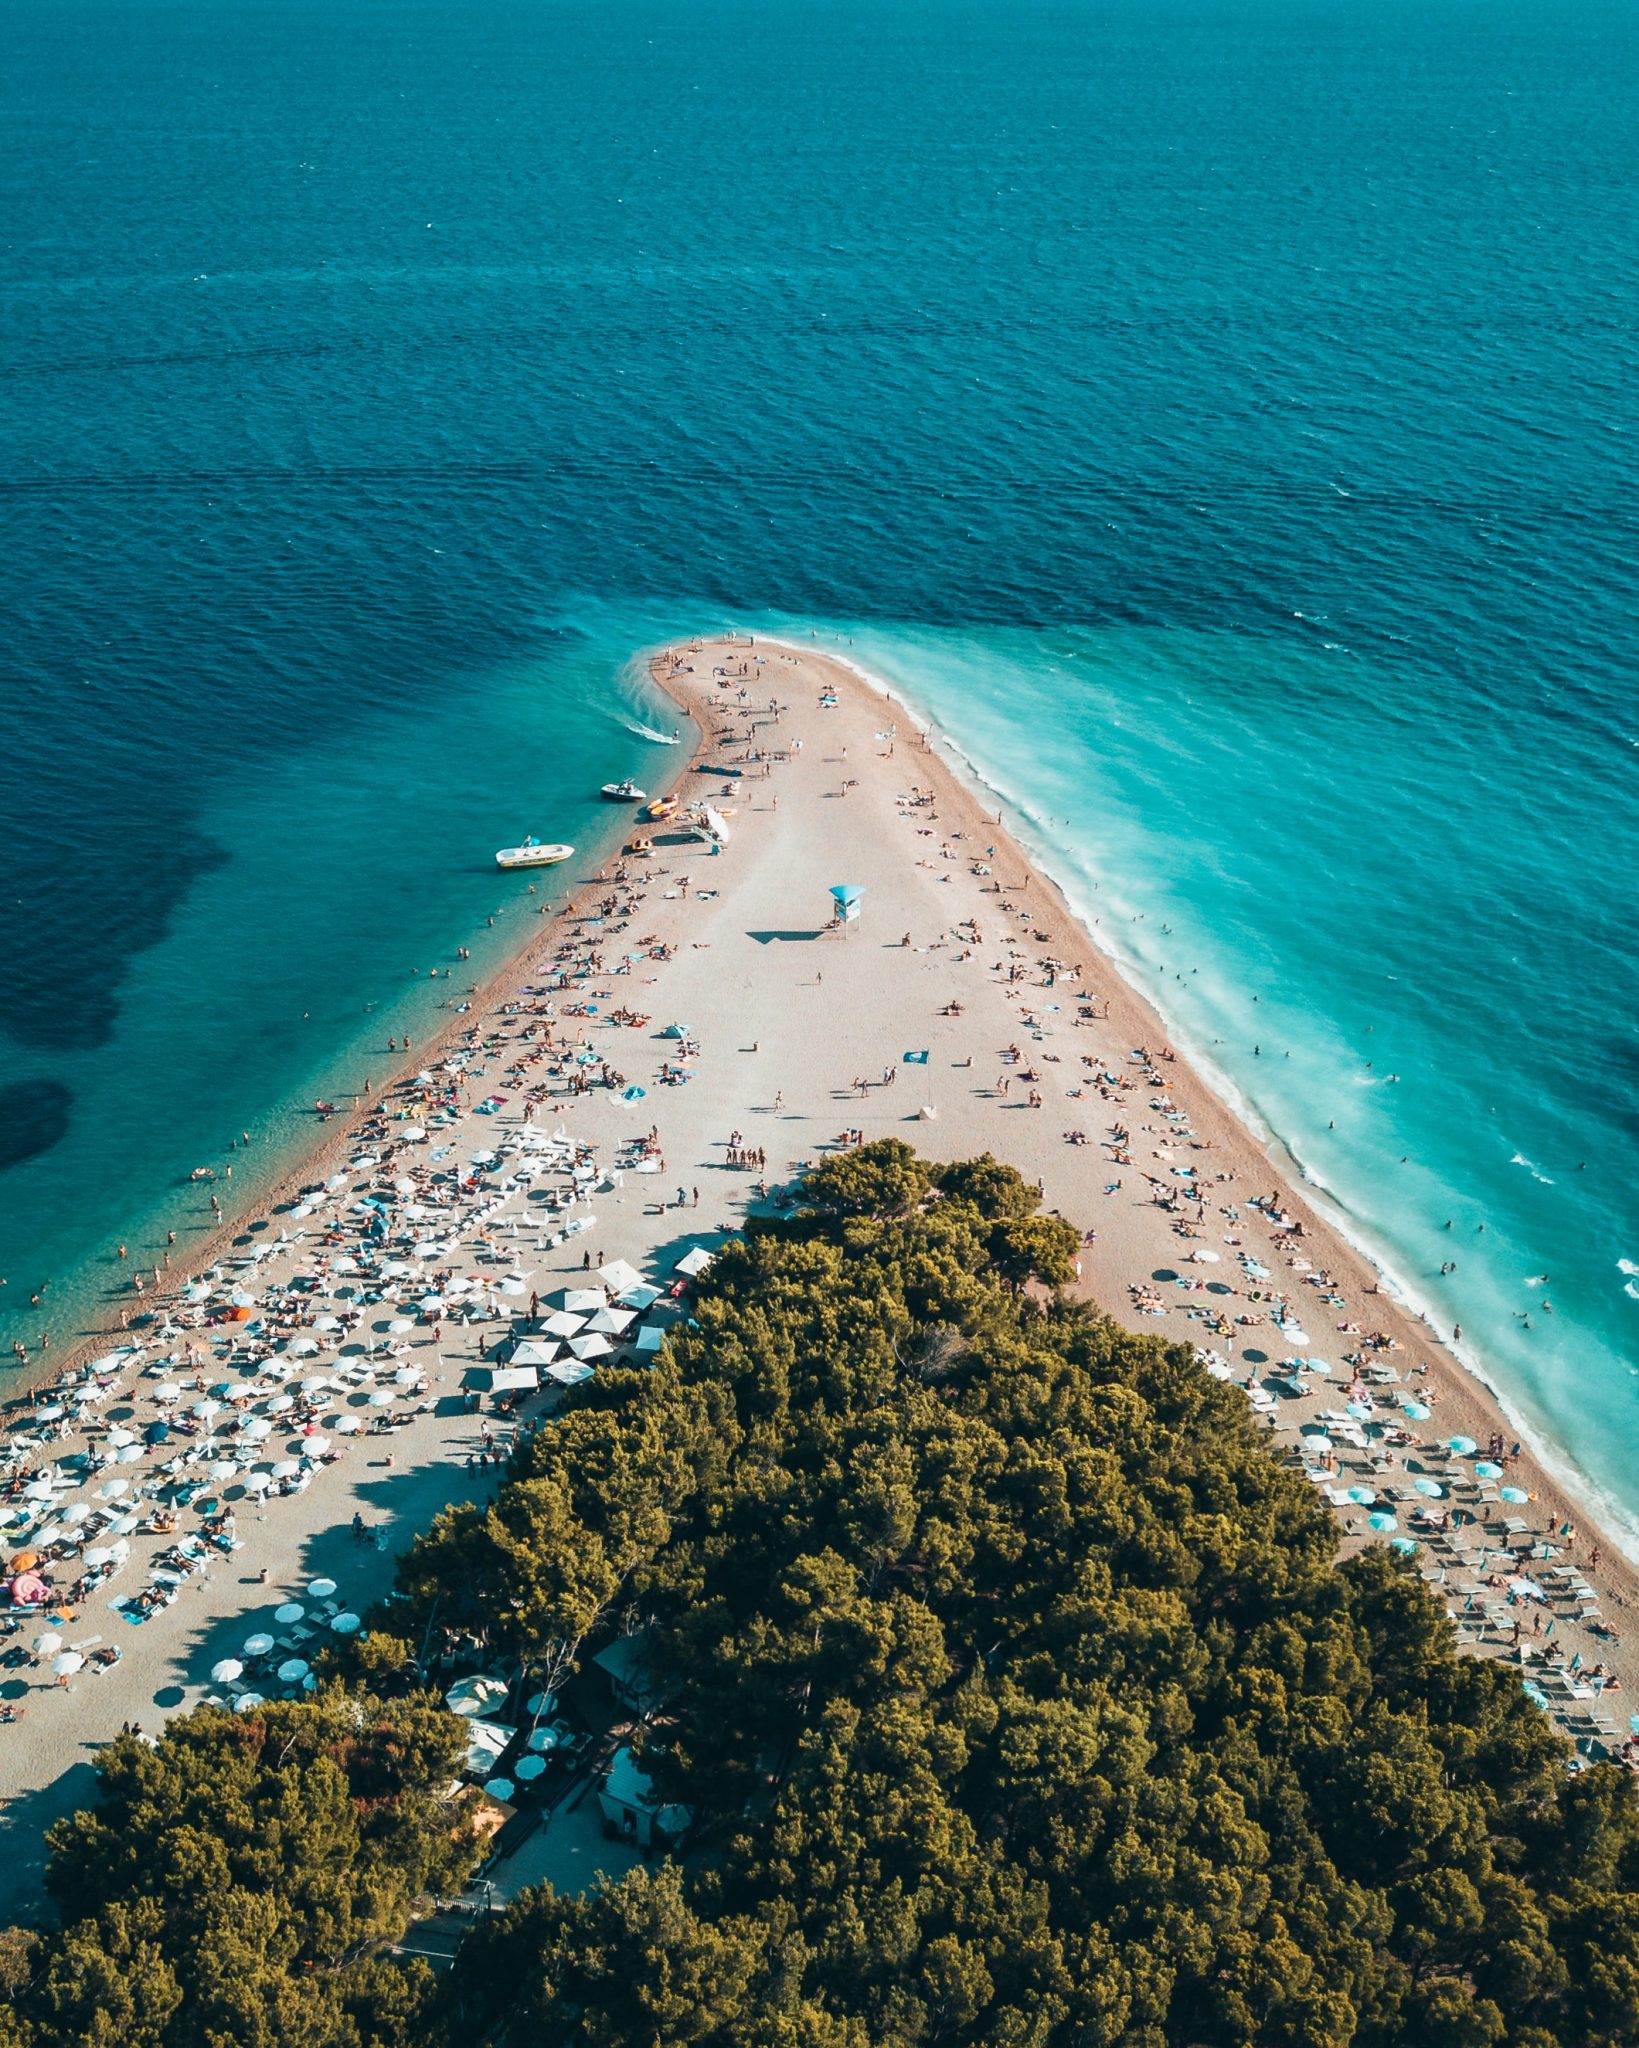 Top Ten Attractions in Croatia